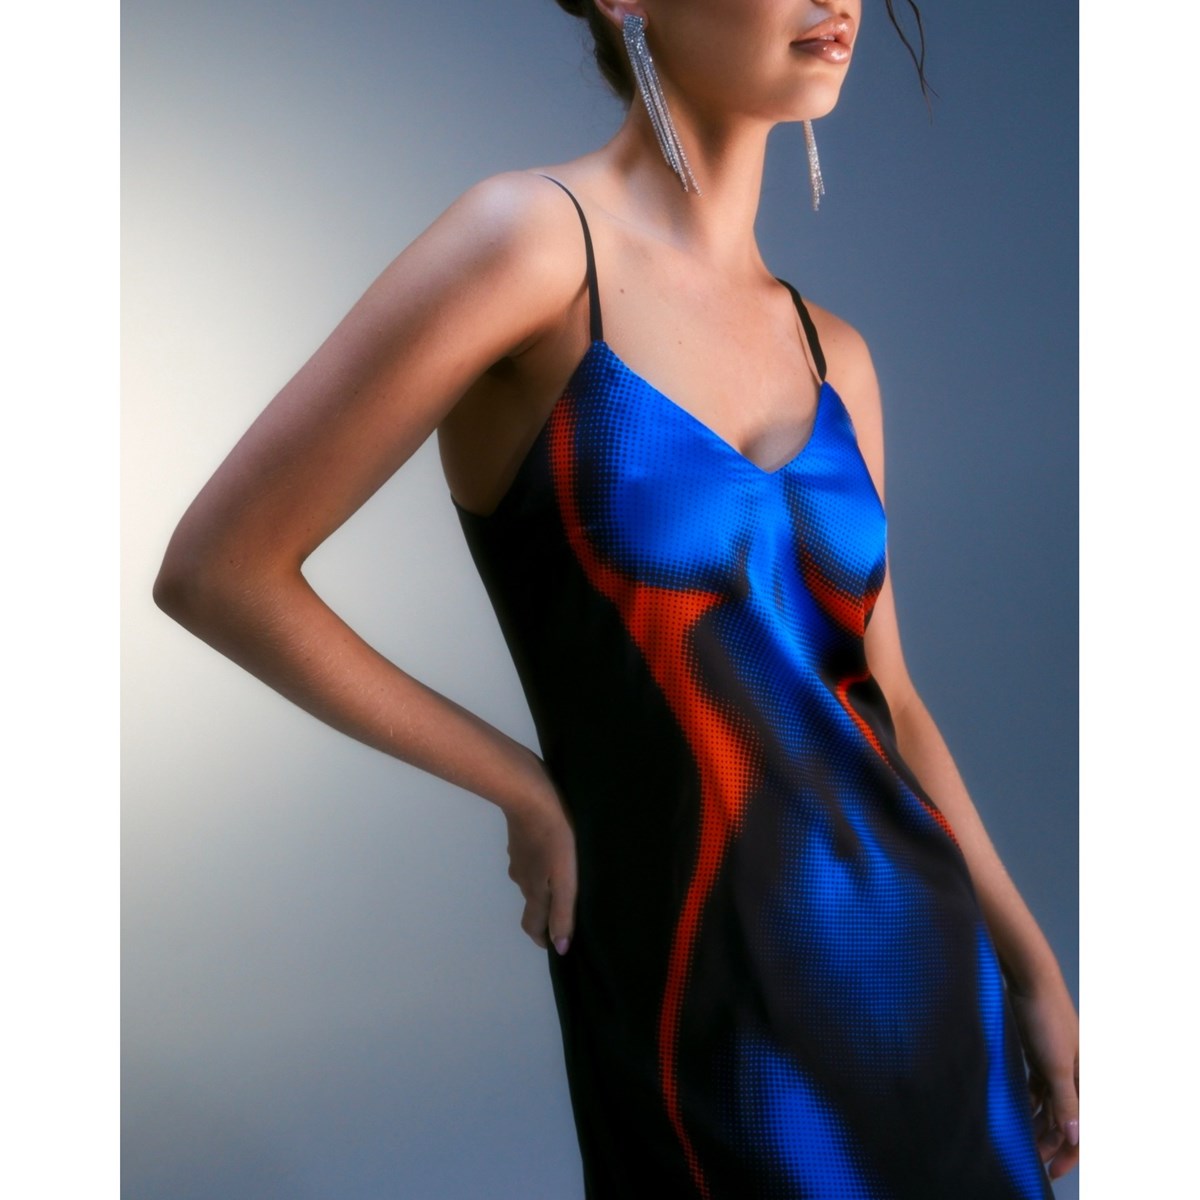 Сине-черное платье-комбинация Topless с эксклюзивным боди-принтом RIZZLE — купить в интернет-магазине lio